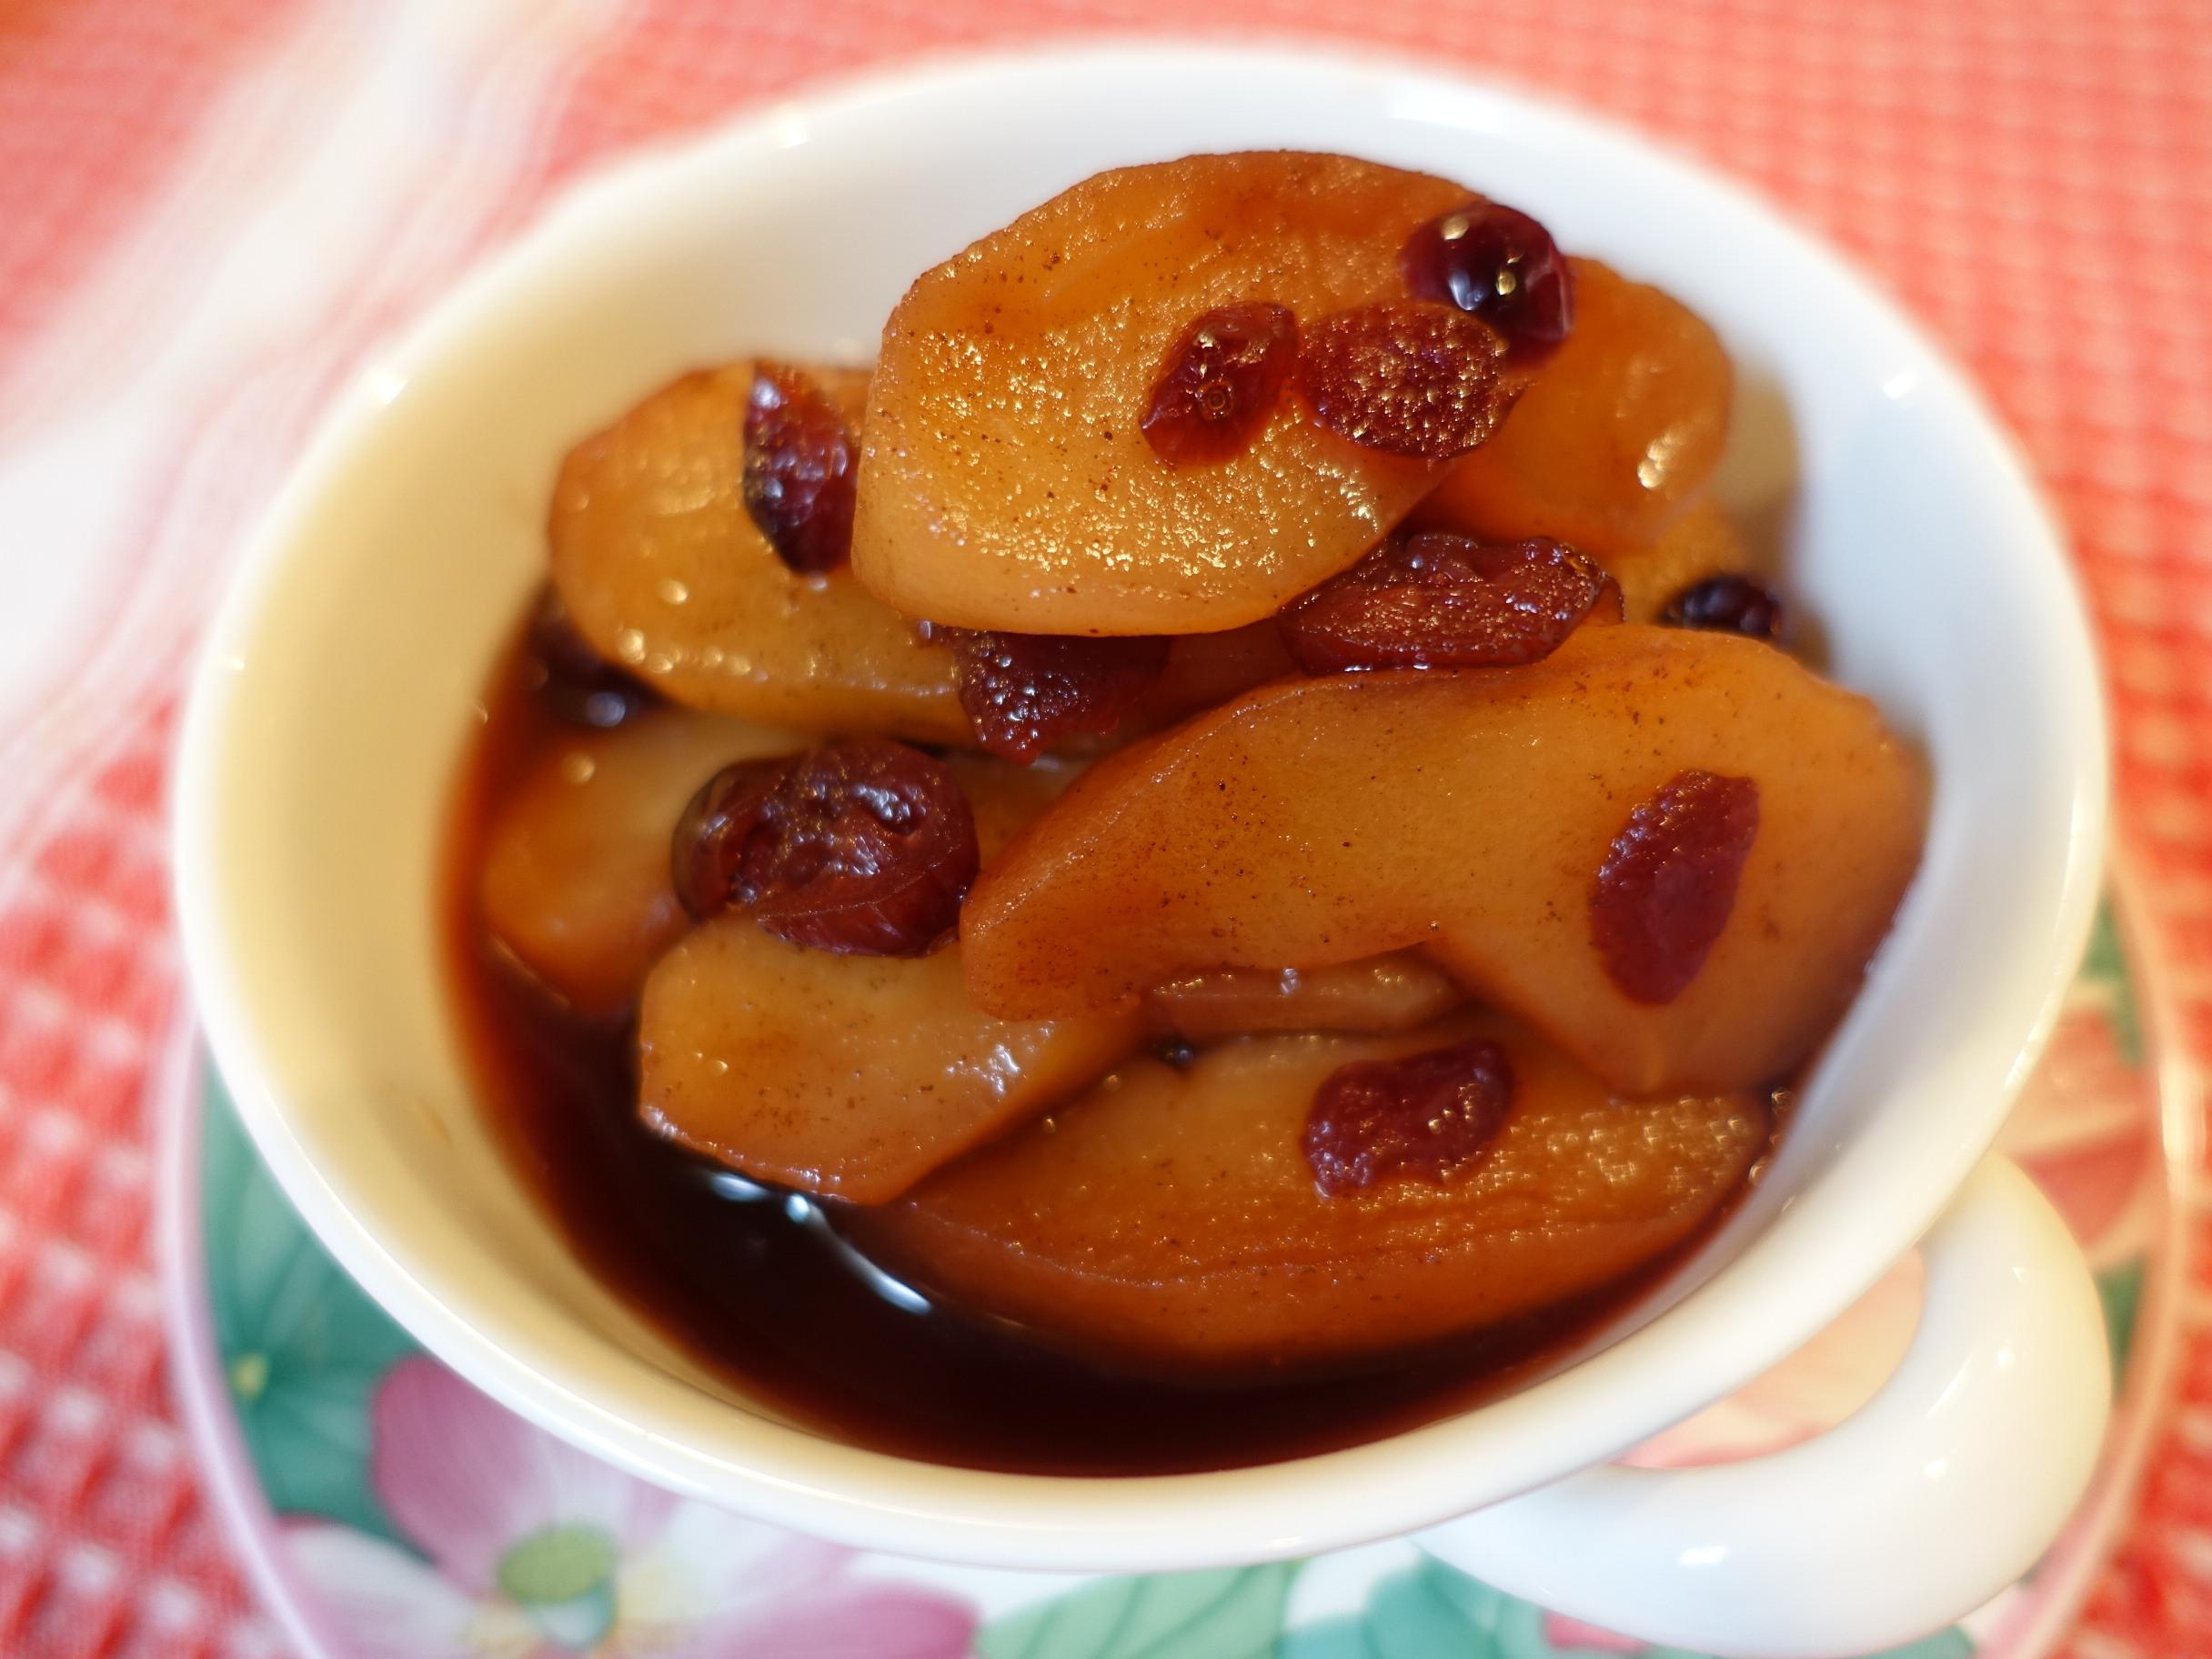 冷え症の緩和に シナモンりんごのコンポートのレシピ 作り方 須崎 桂子 料理教室検索サイト クスパ